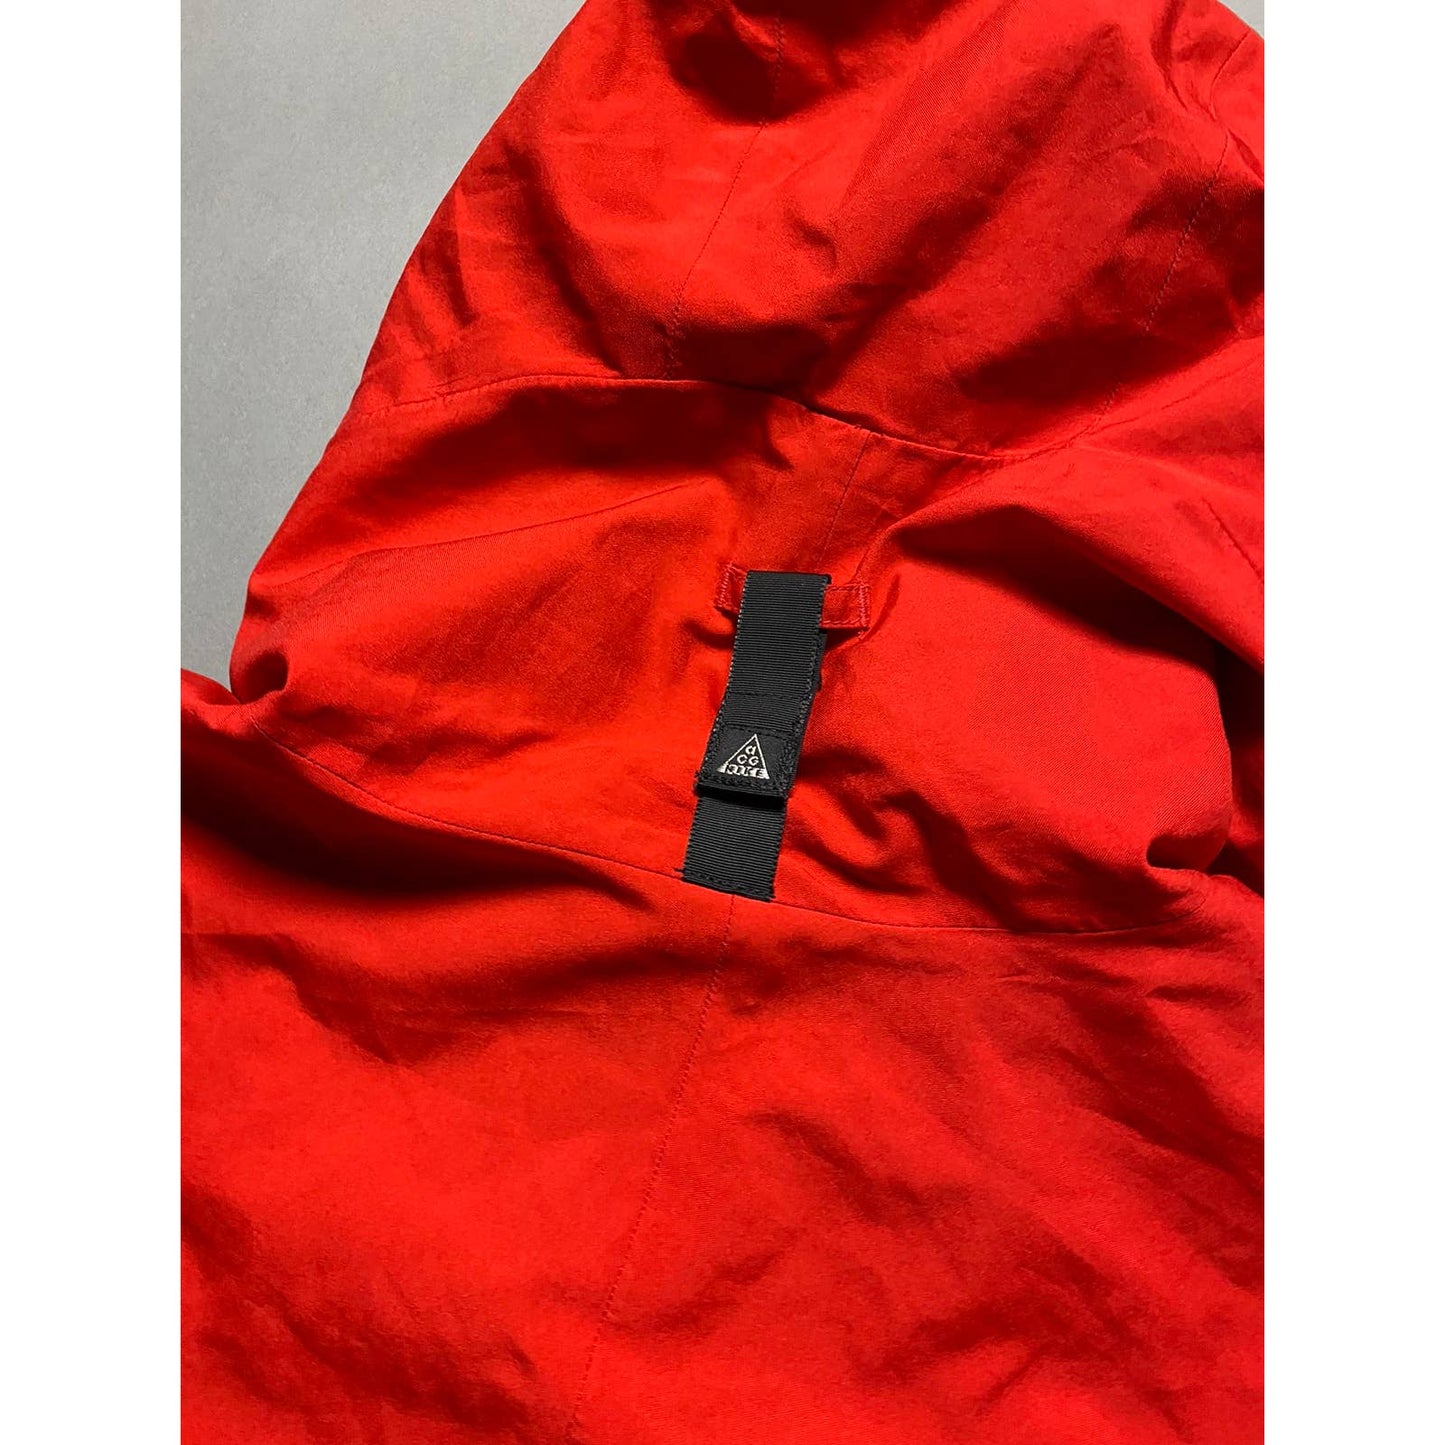 Nike ACG jacket vintage red 2000s windbreaker